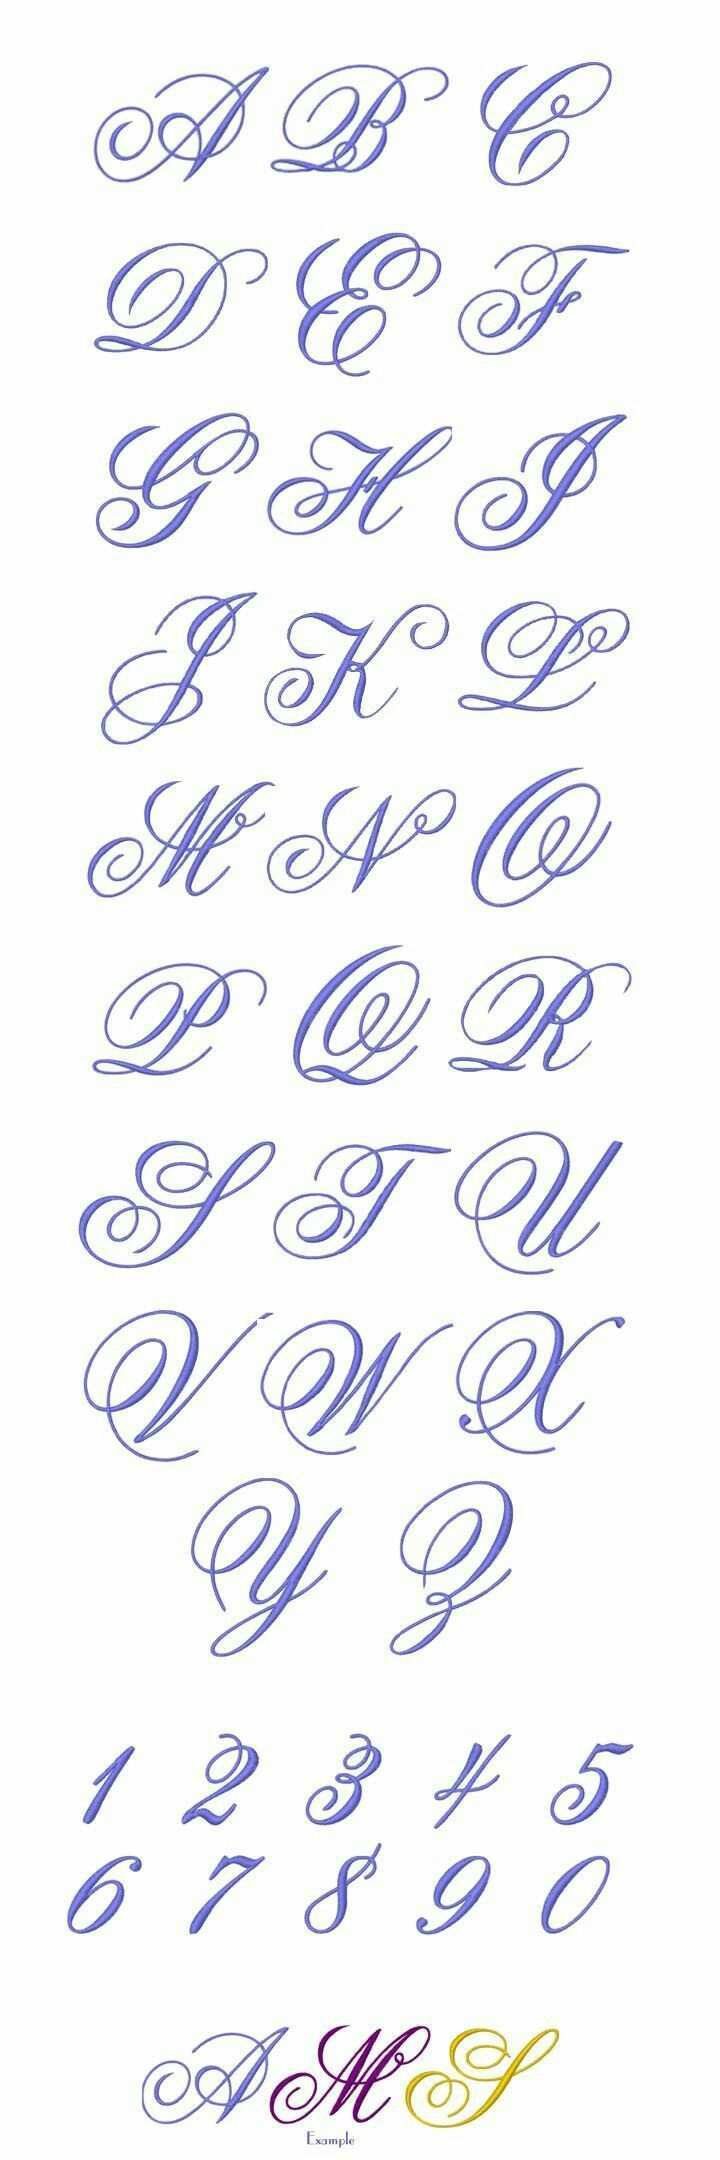 Letra Buchstaben Design Buchstaben Alphabet Handlettering Lettering Letters Abc Abchallenge Zahlen Sc Schrift Tattoos Kostenlose Stickmotive Monogramm